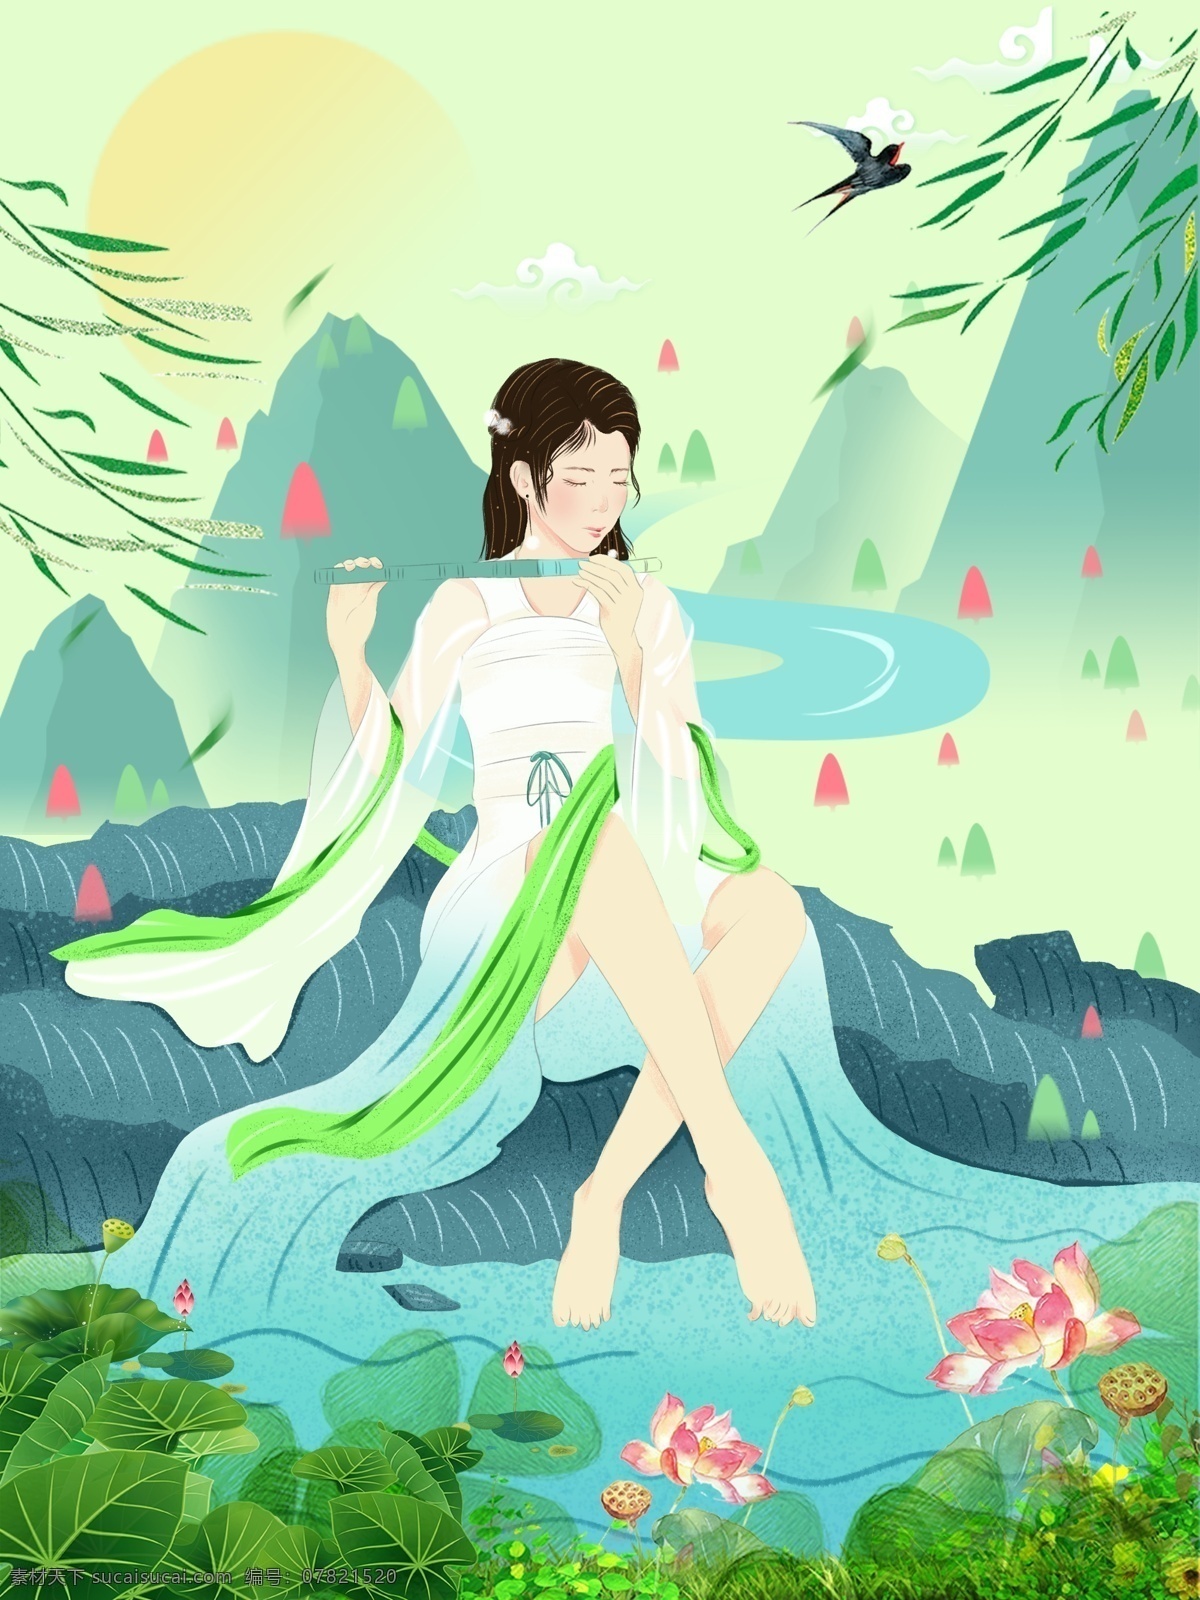 气韵 女神 二十四节气 春分 林间 古装 女孩 插画 壁纸 绿色 小清新 背景